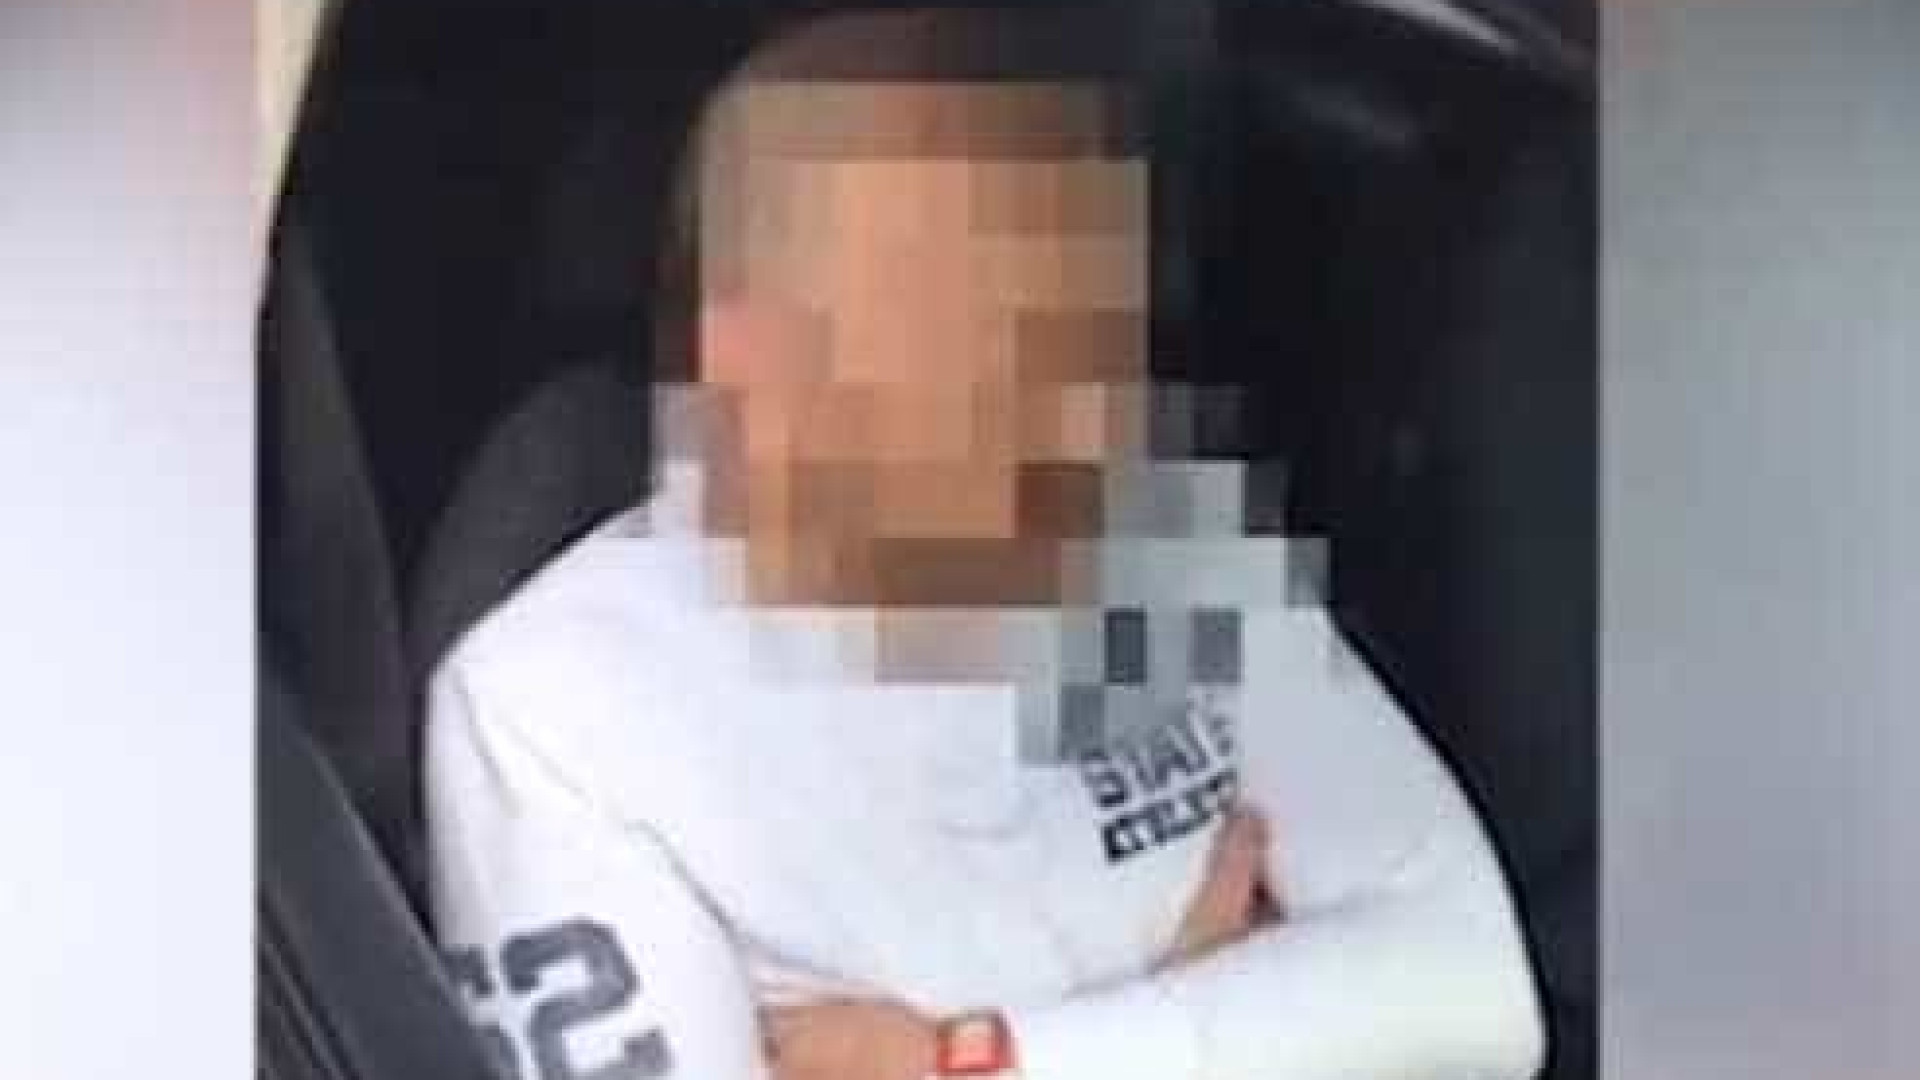 Pedófilo detido enquanto esperava por criança de 14 anos